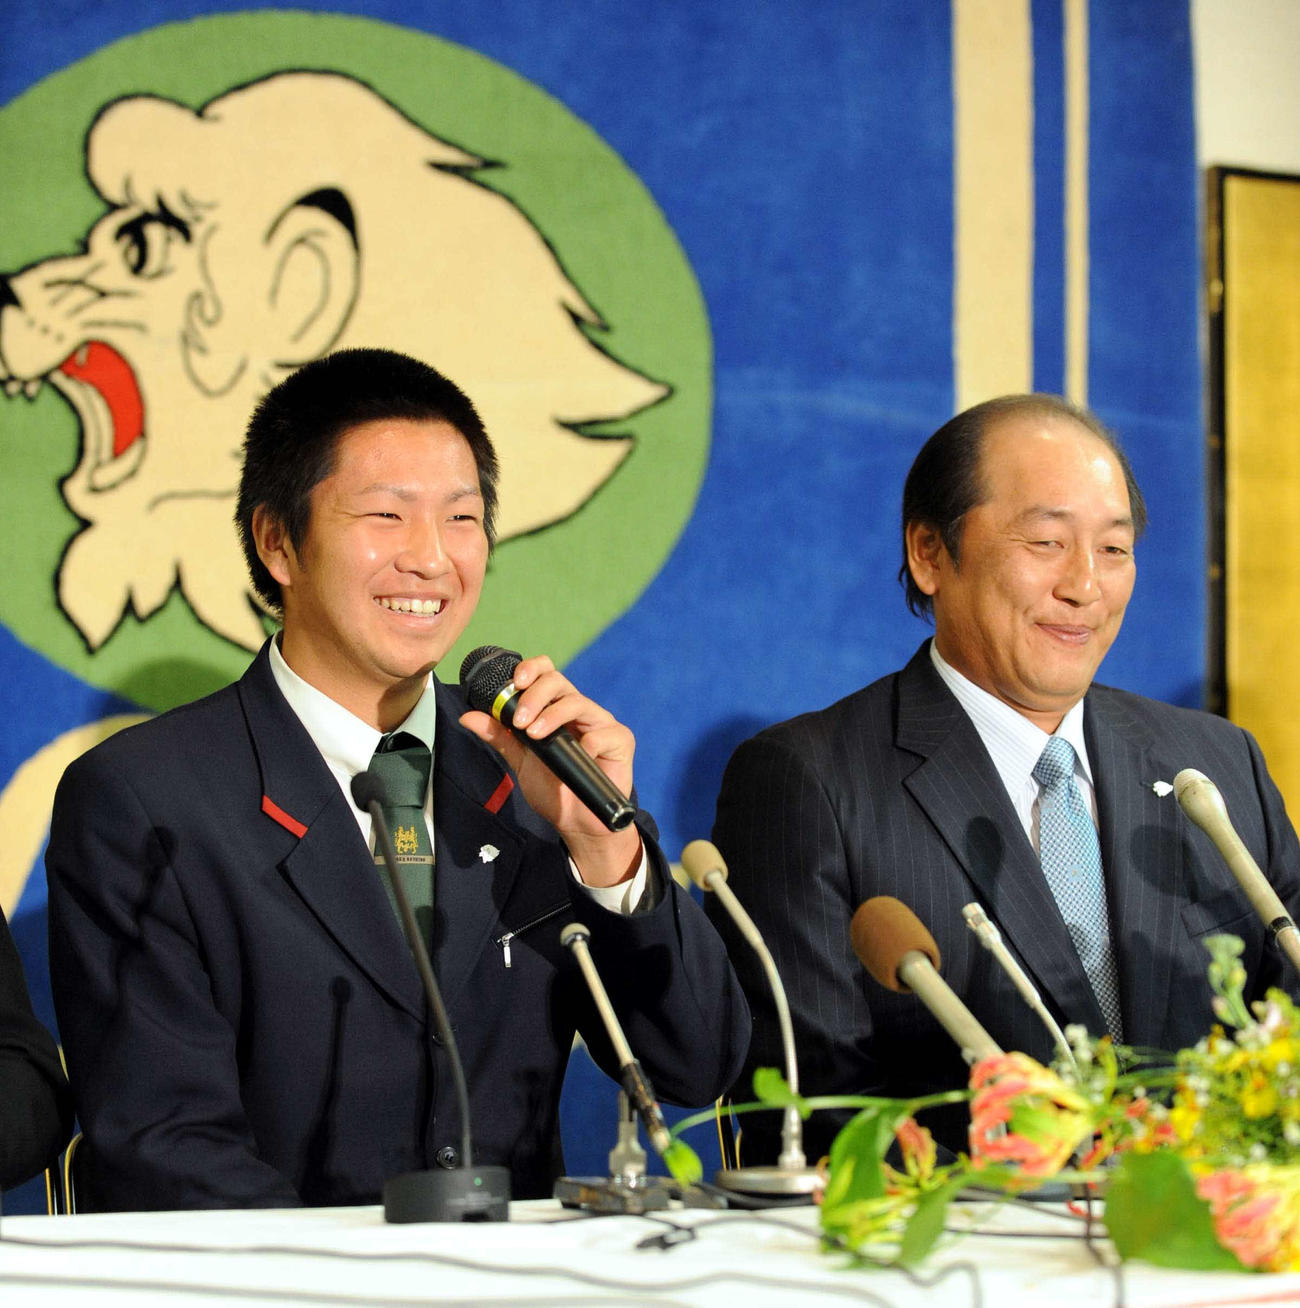 2008年12月10日、西武新入団選手会見で笑顔を見せる中崎雄太（左）と西武渡辺久信監督